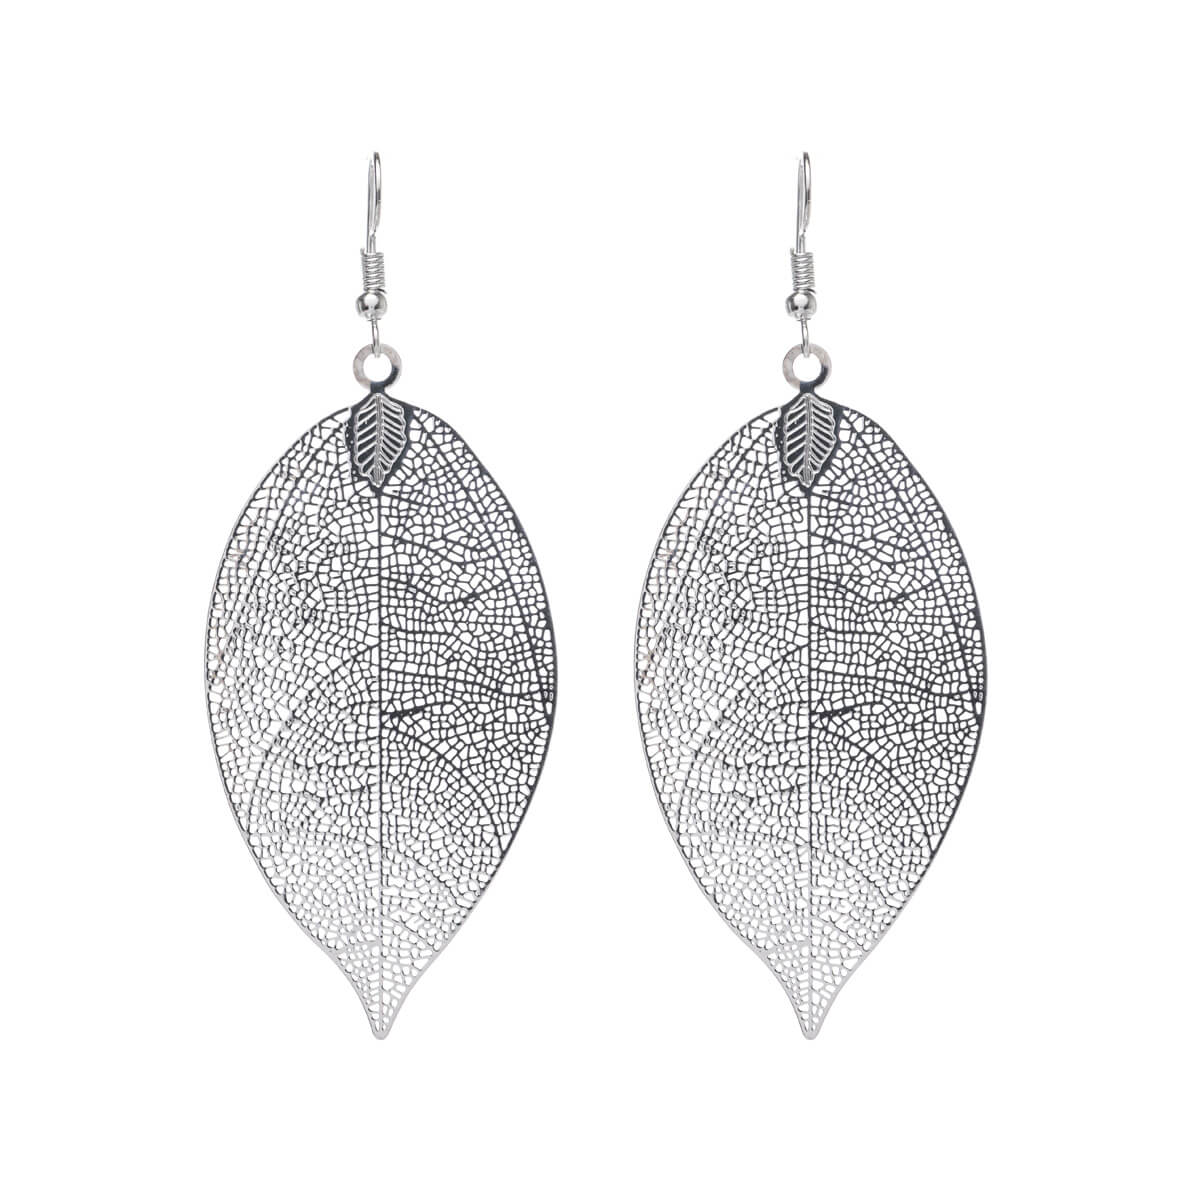 Metal leaf earrings